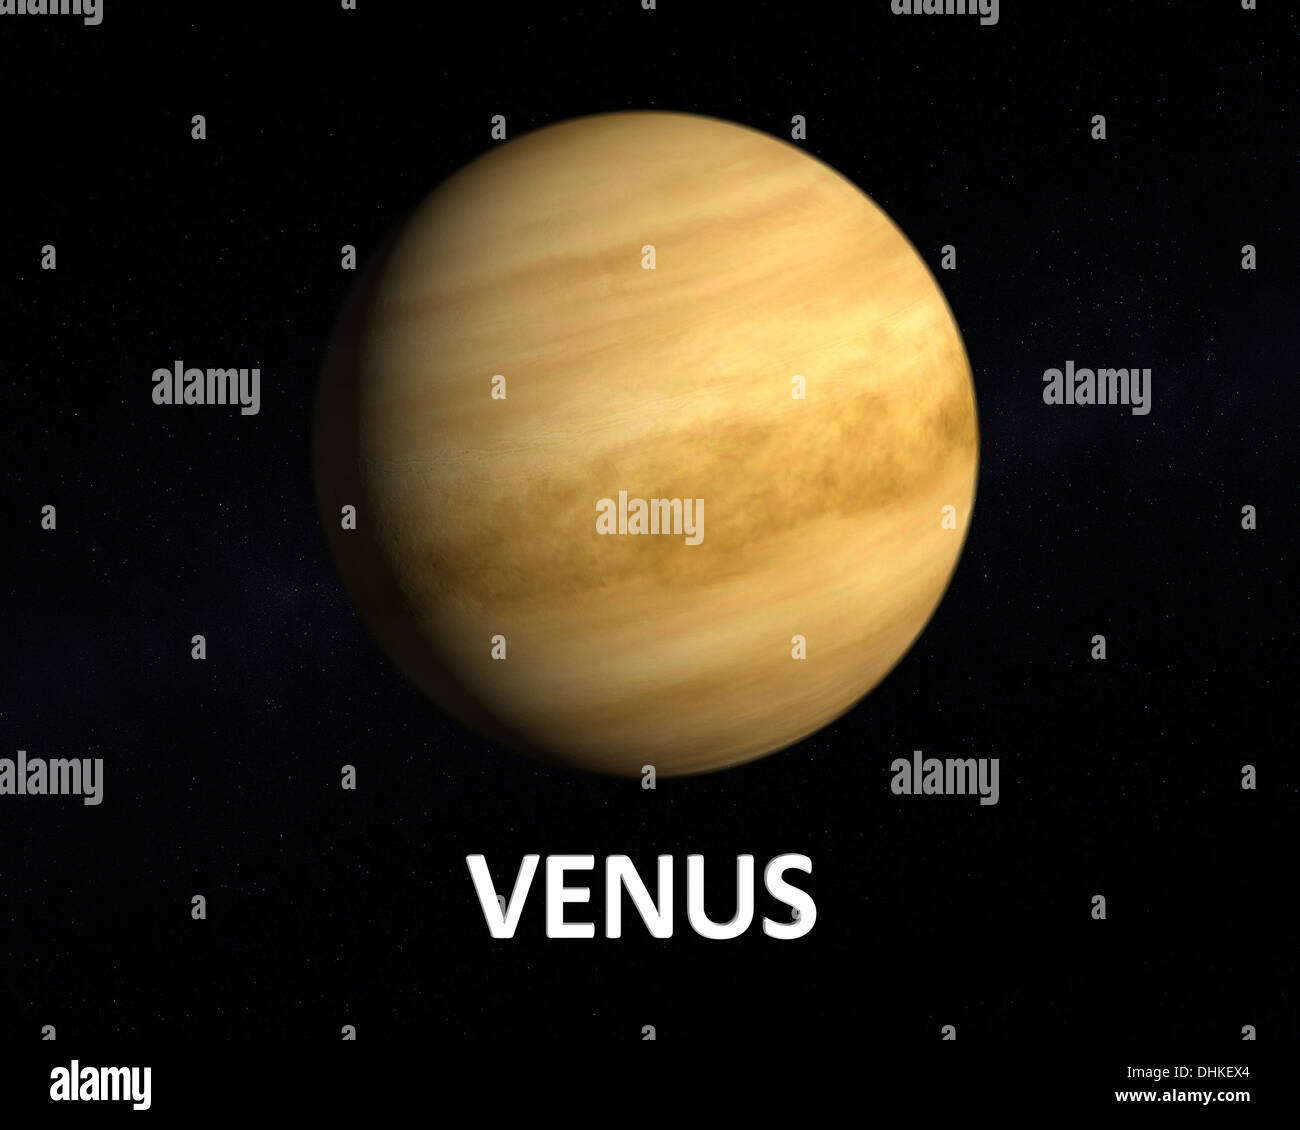 Un rendu de la planète Vénus sur un fond étoilé avec légende en anglais. Banque D'Images